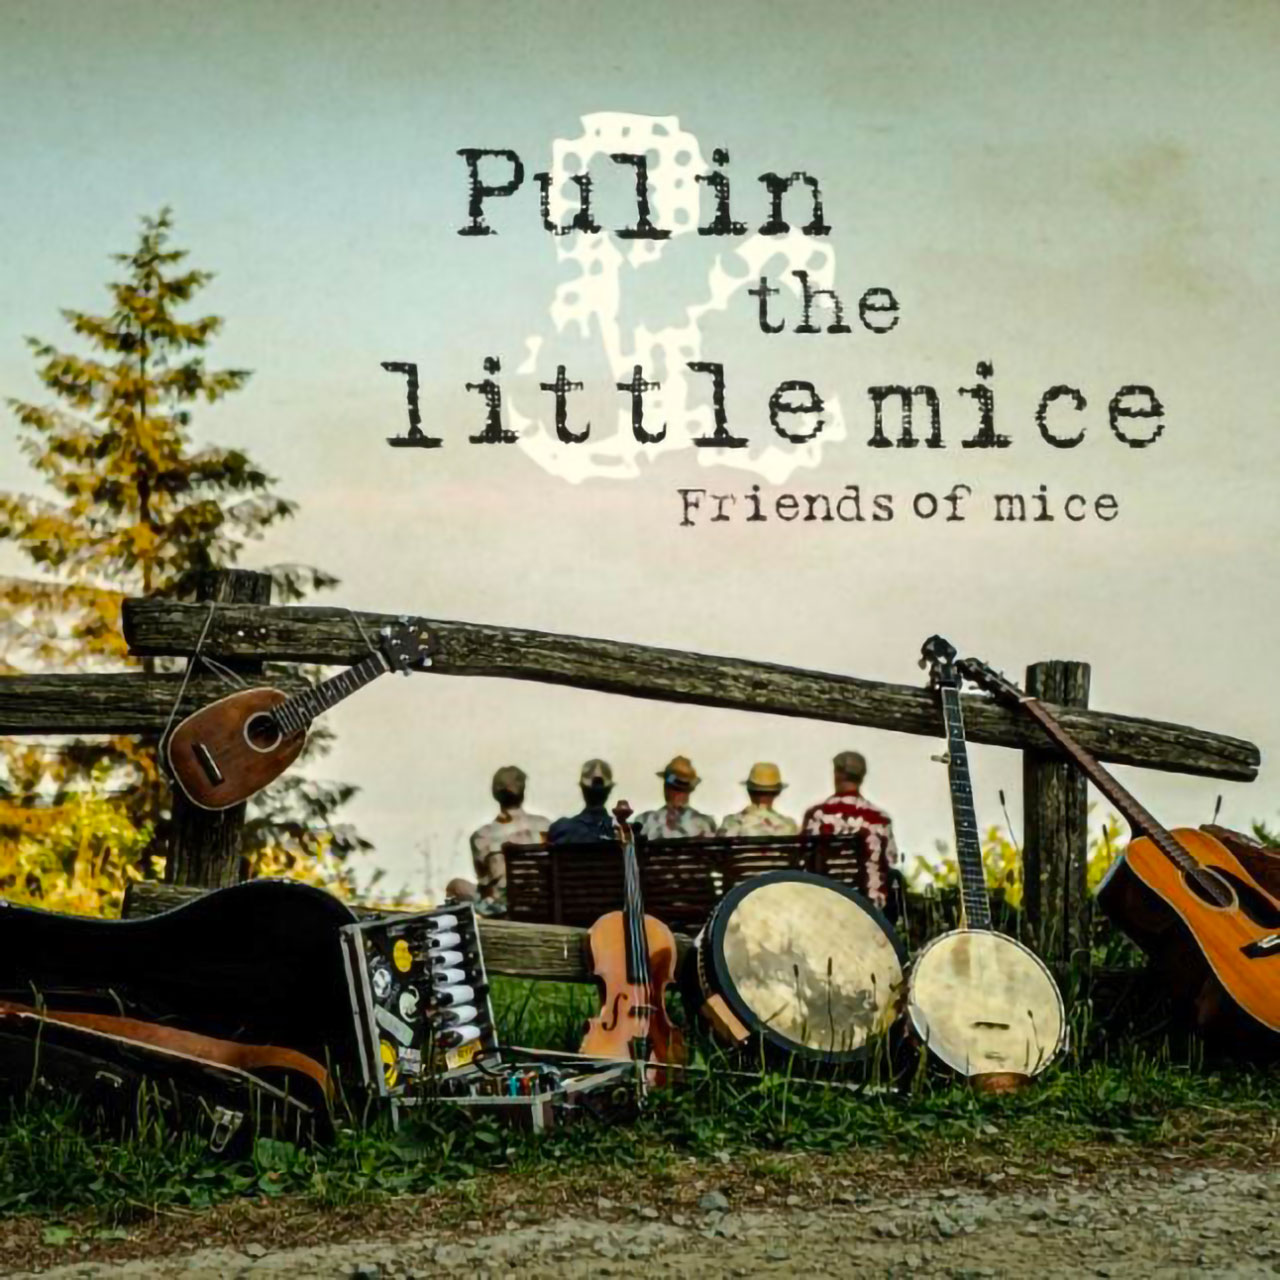 PULIN & THE LITTLE MICE:  ECCO ‘FRIENDS OF MICE’, TRA I SUONI DELL’IRLANDA E LE TRADIZIONI USA